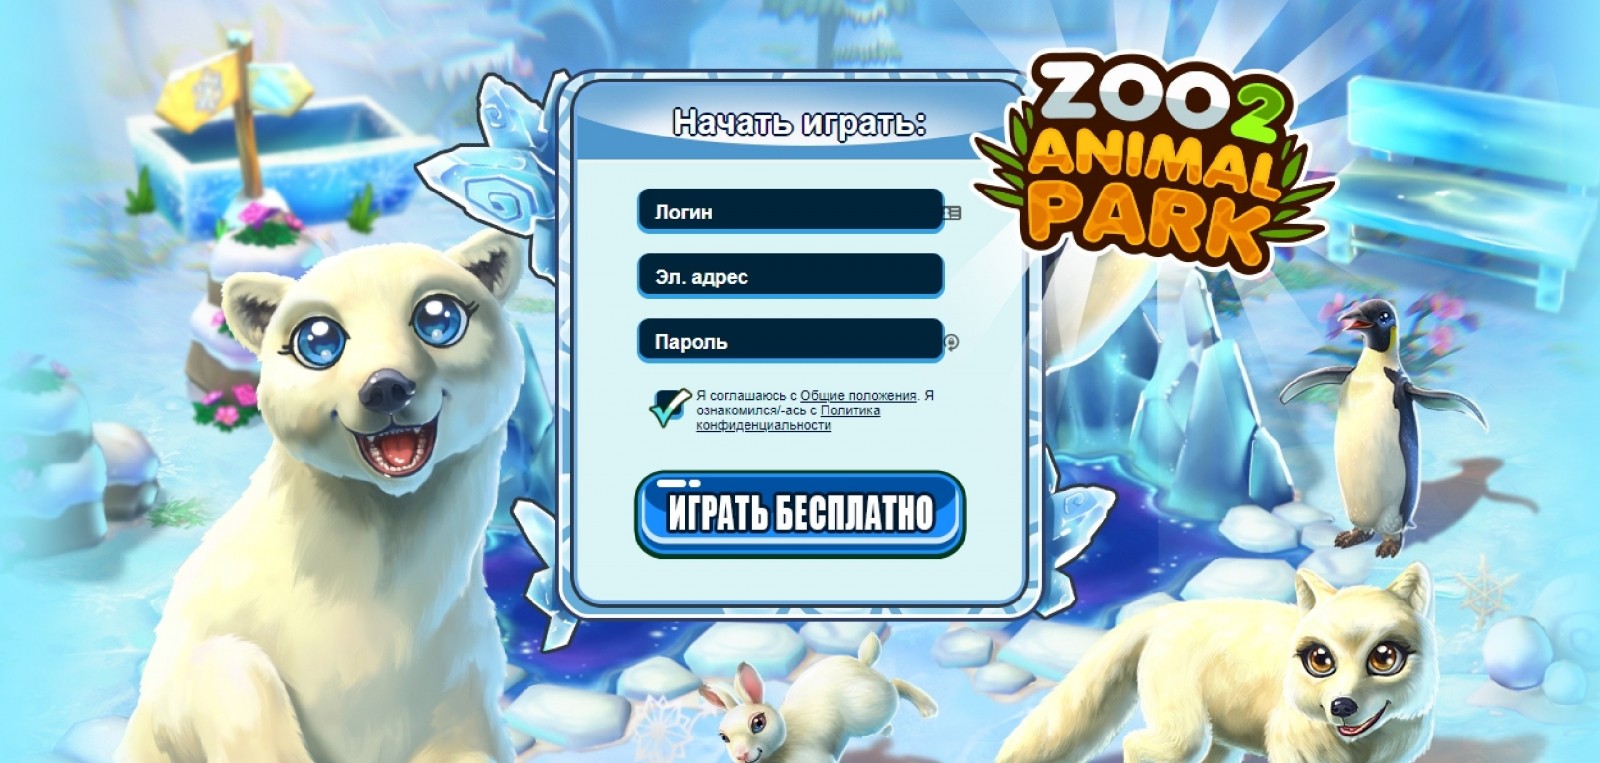 Игра Zoo 2 Animal Park зоопарк онлайн